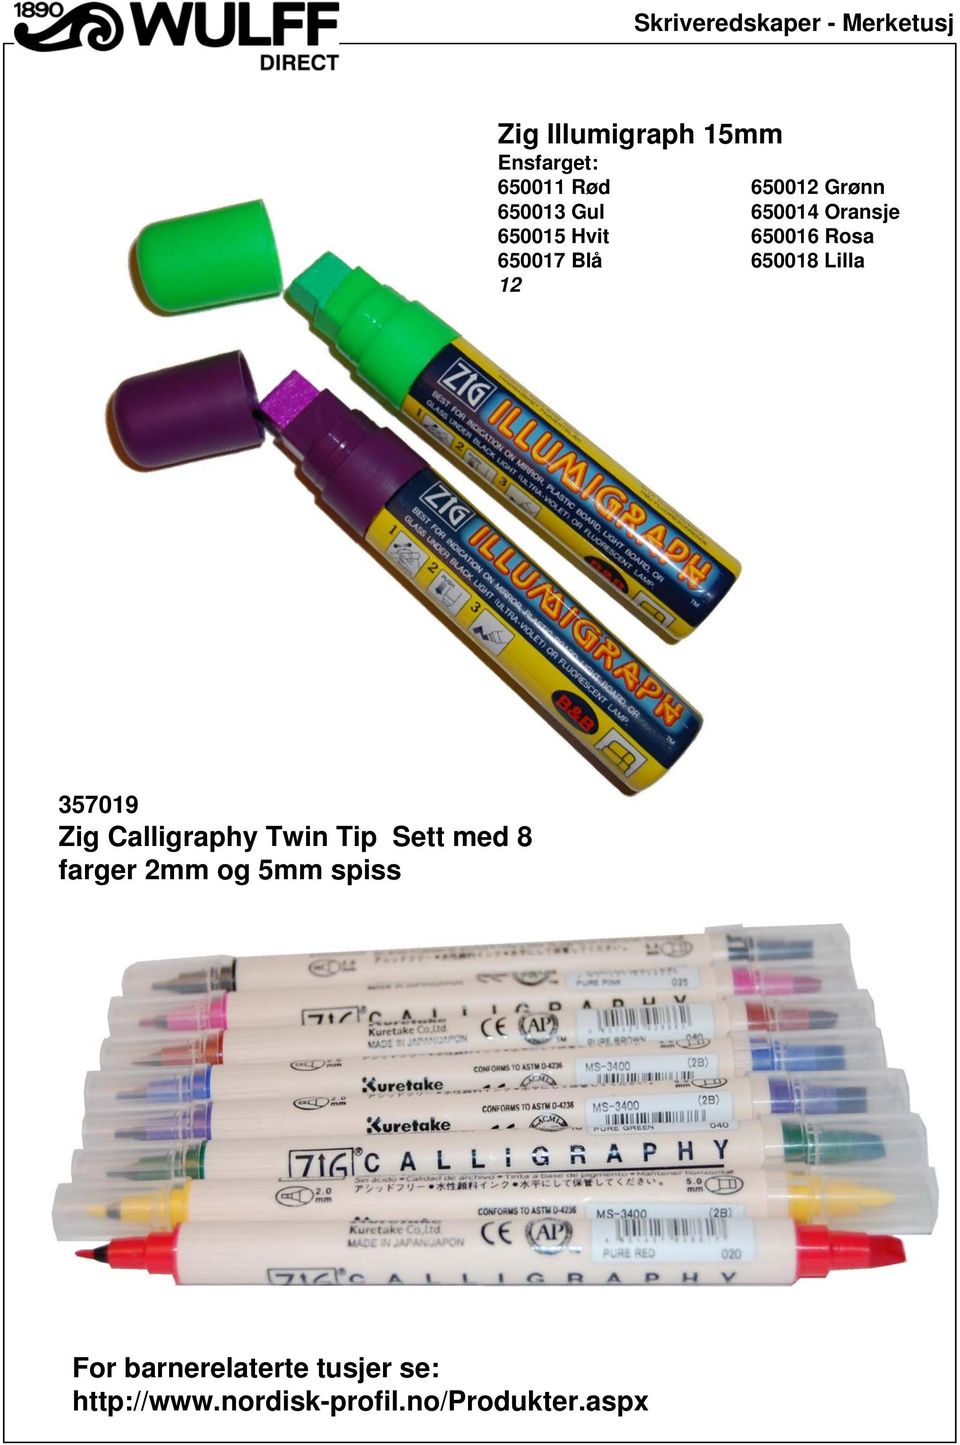 357019 Zig Calligraphy Twin Tip Sett med 8 farger 2mm og 5mm spiss